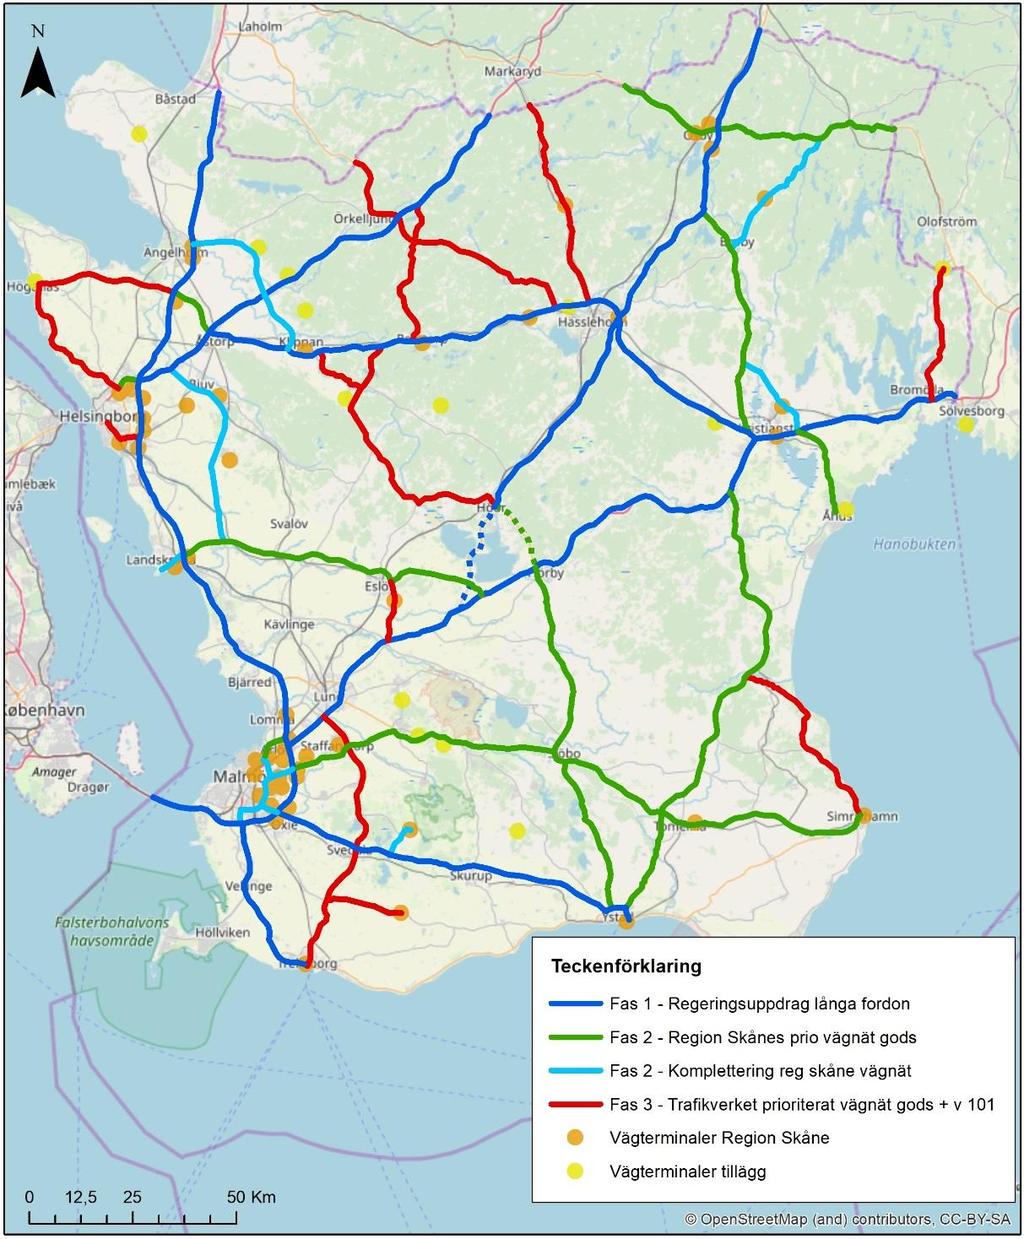 Figur 1 Förslag till HCT-vägnät i Skåne, Fas 3 omkring år 2040. Föreslaget nät för HCT-transporter på väg har behandlats och förankrats vid workshop i december 2018.